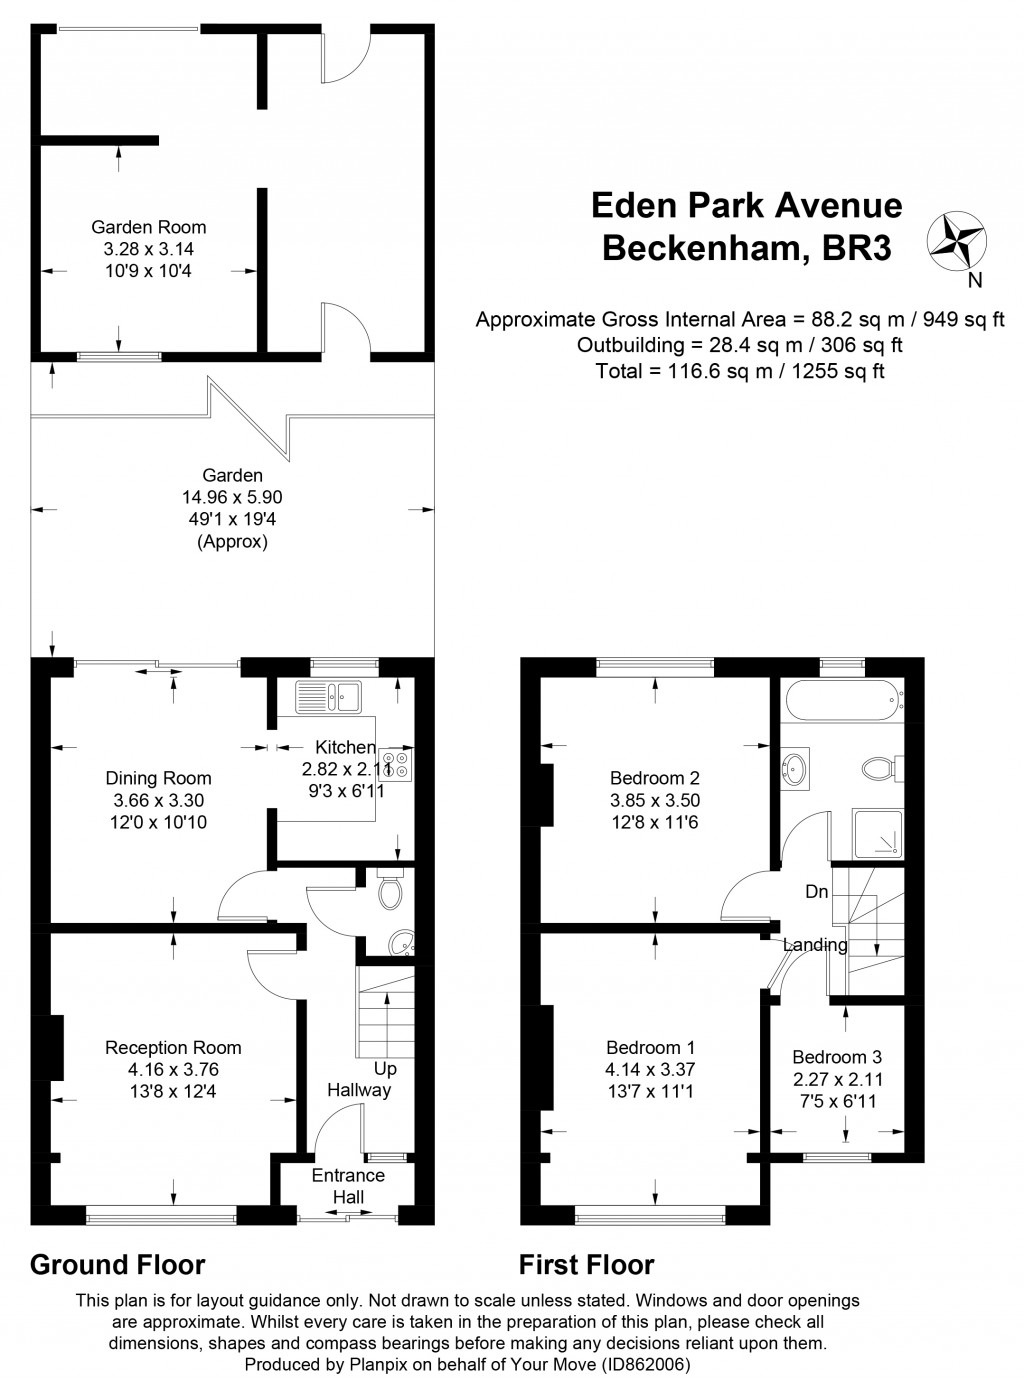 Floorplans For Eden Park Avenue, Beckenham